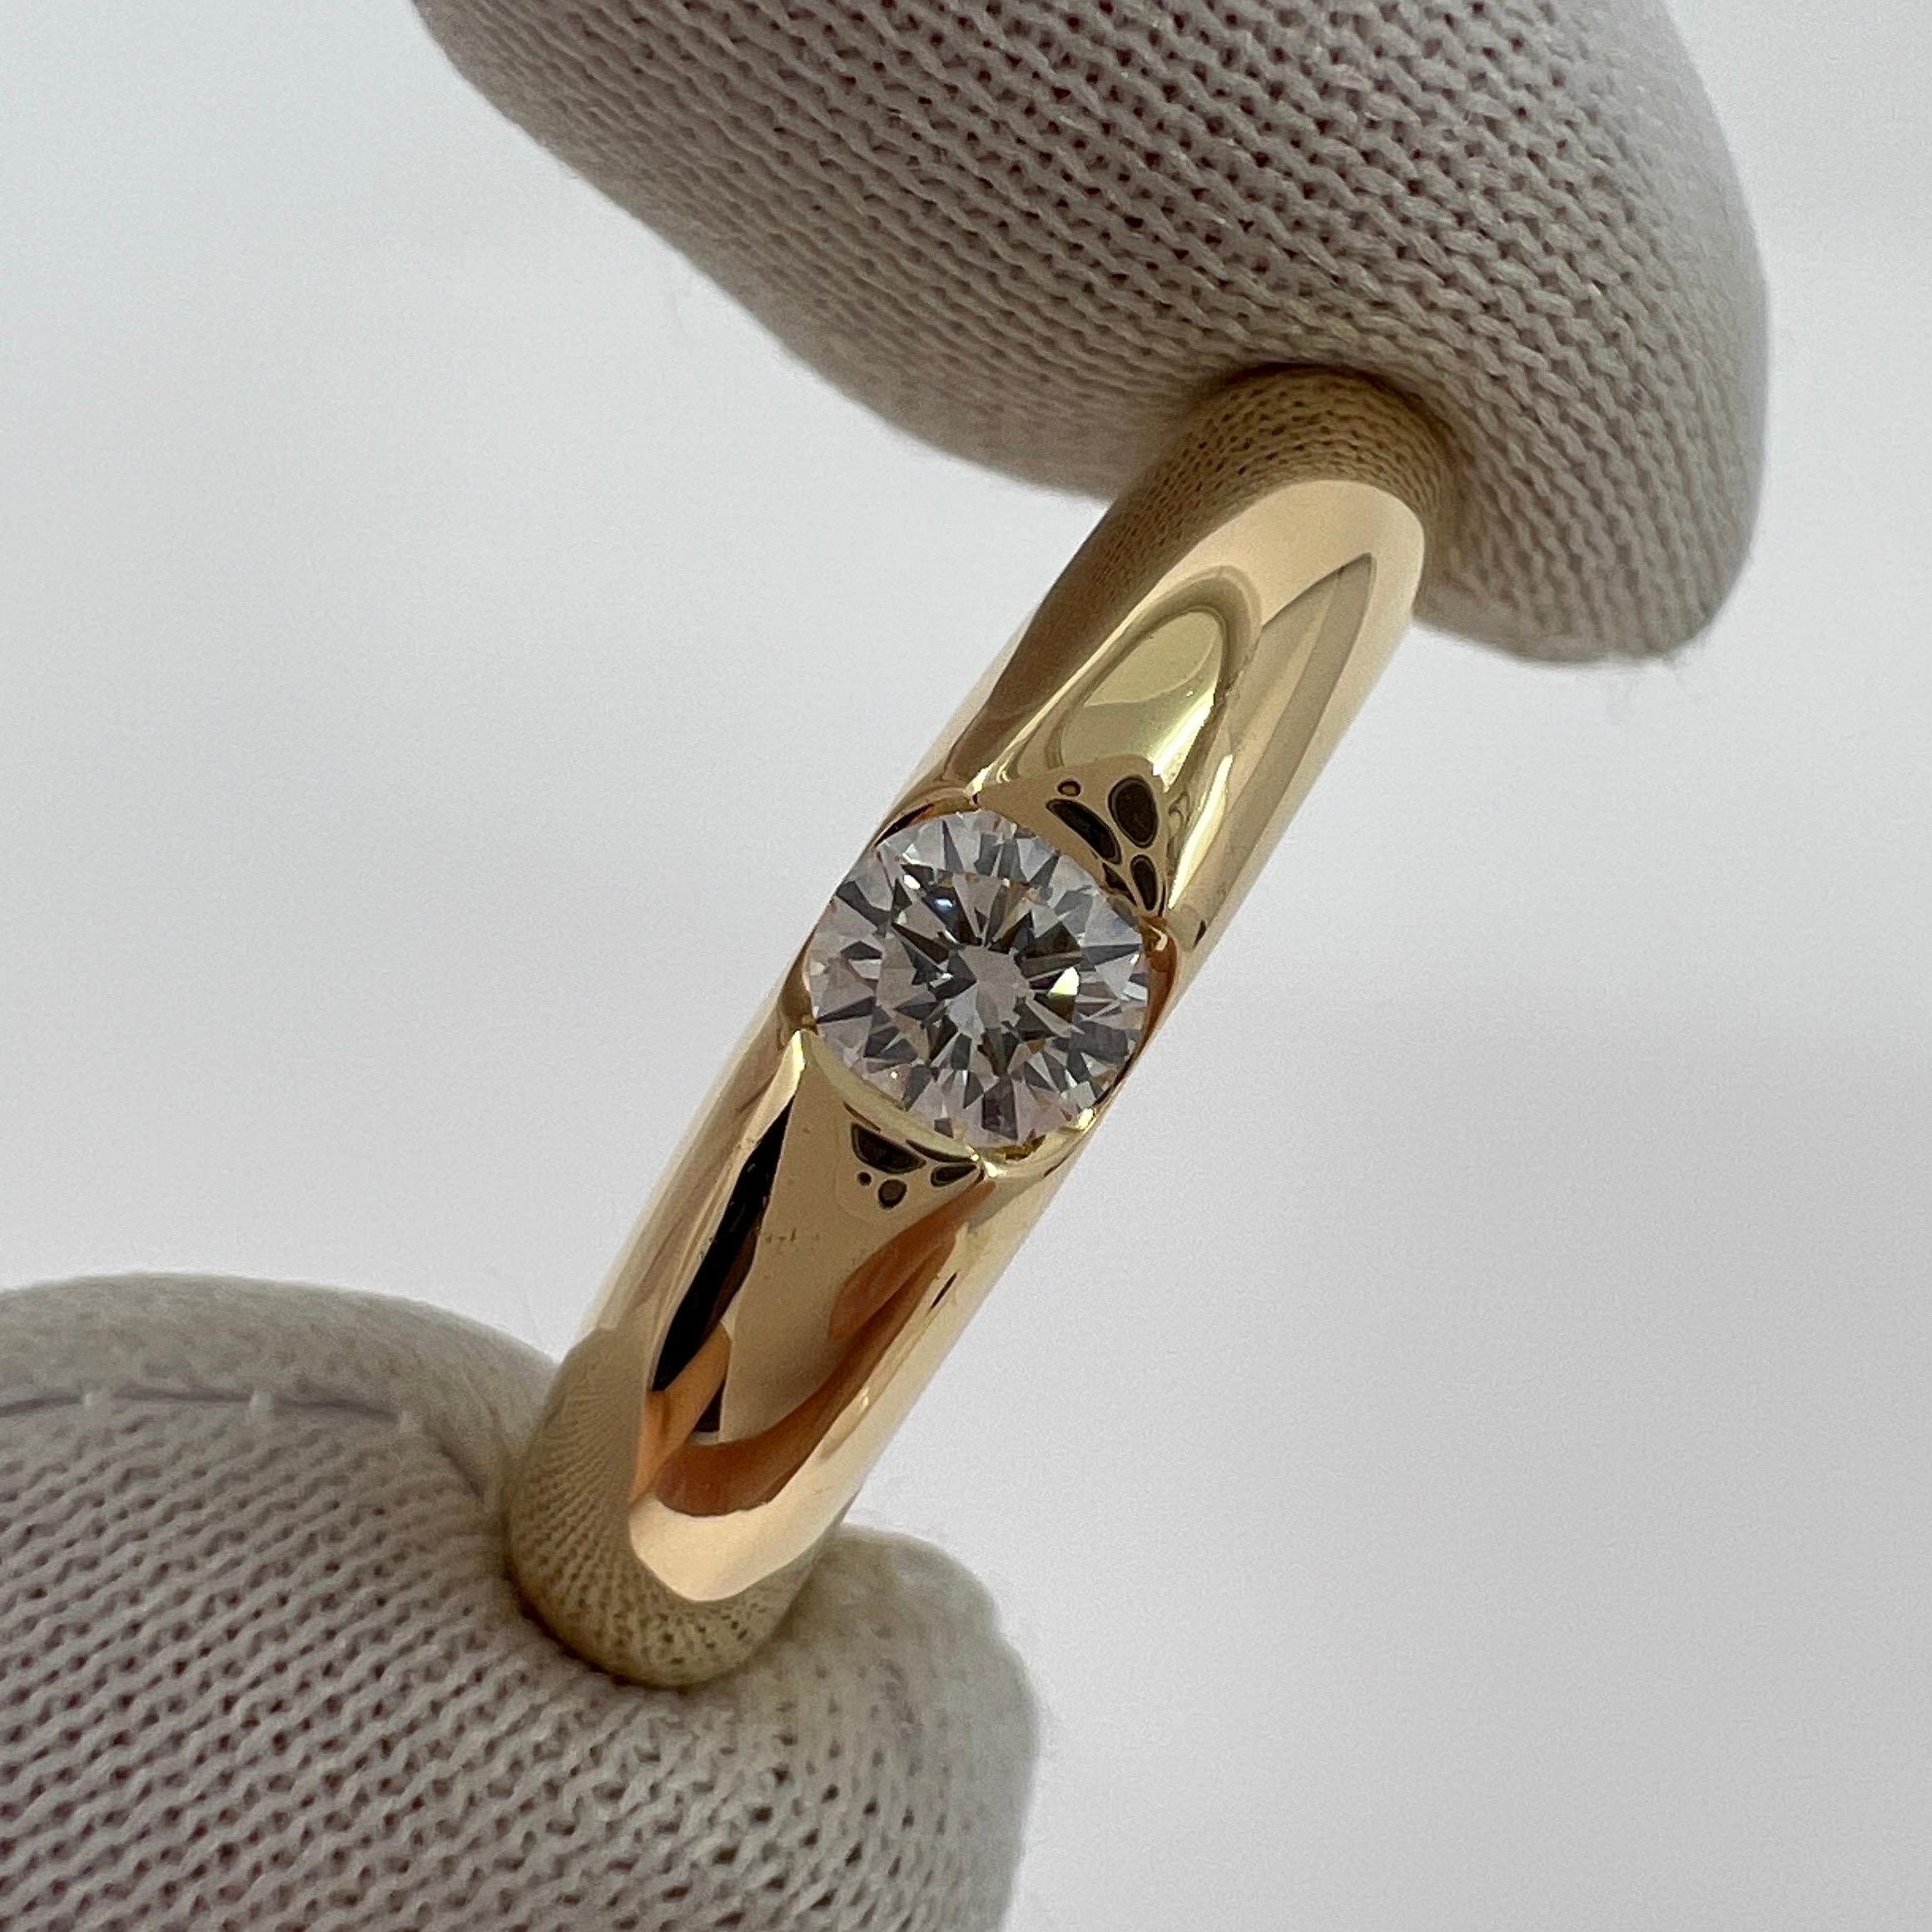 Vintage Cartier Round Brilliant Diamond 18k Yellow Gold Solitaire Ring.

Superbe bague en or jaune sertie d'un diamant rond de 0.25ct. Couleur E, pureté VVS1, excellente taille ronde et brillante.
Les maisons de haute joaillerie comme Cartier